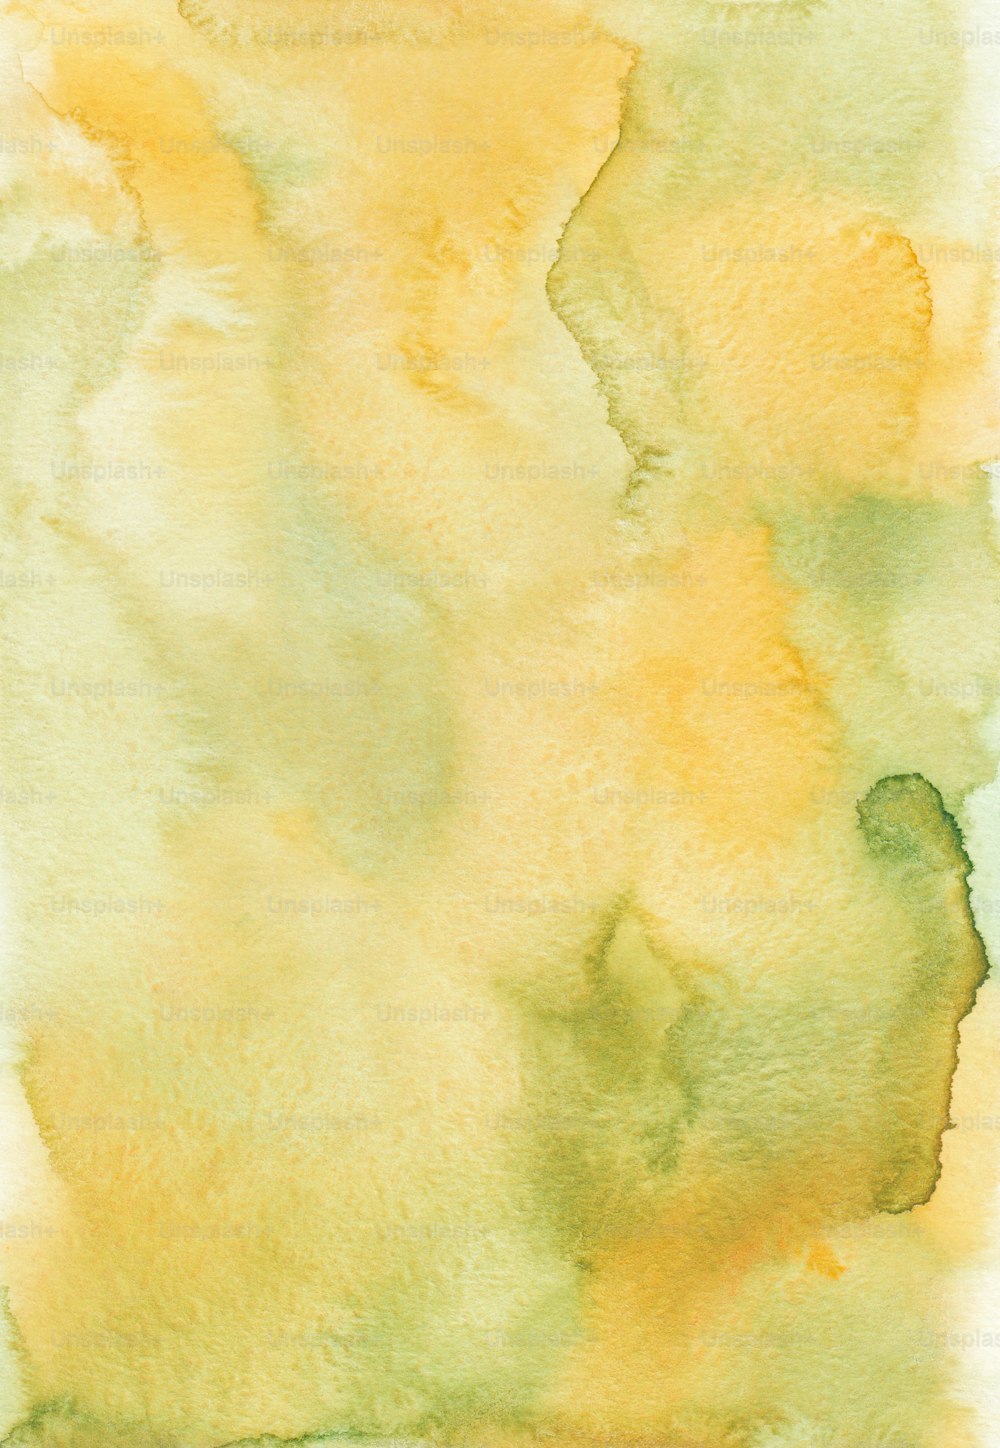 Una acuarela de colores amarillo y verde